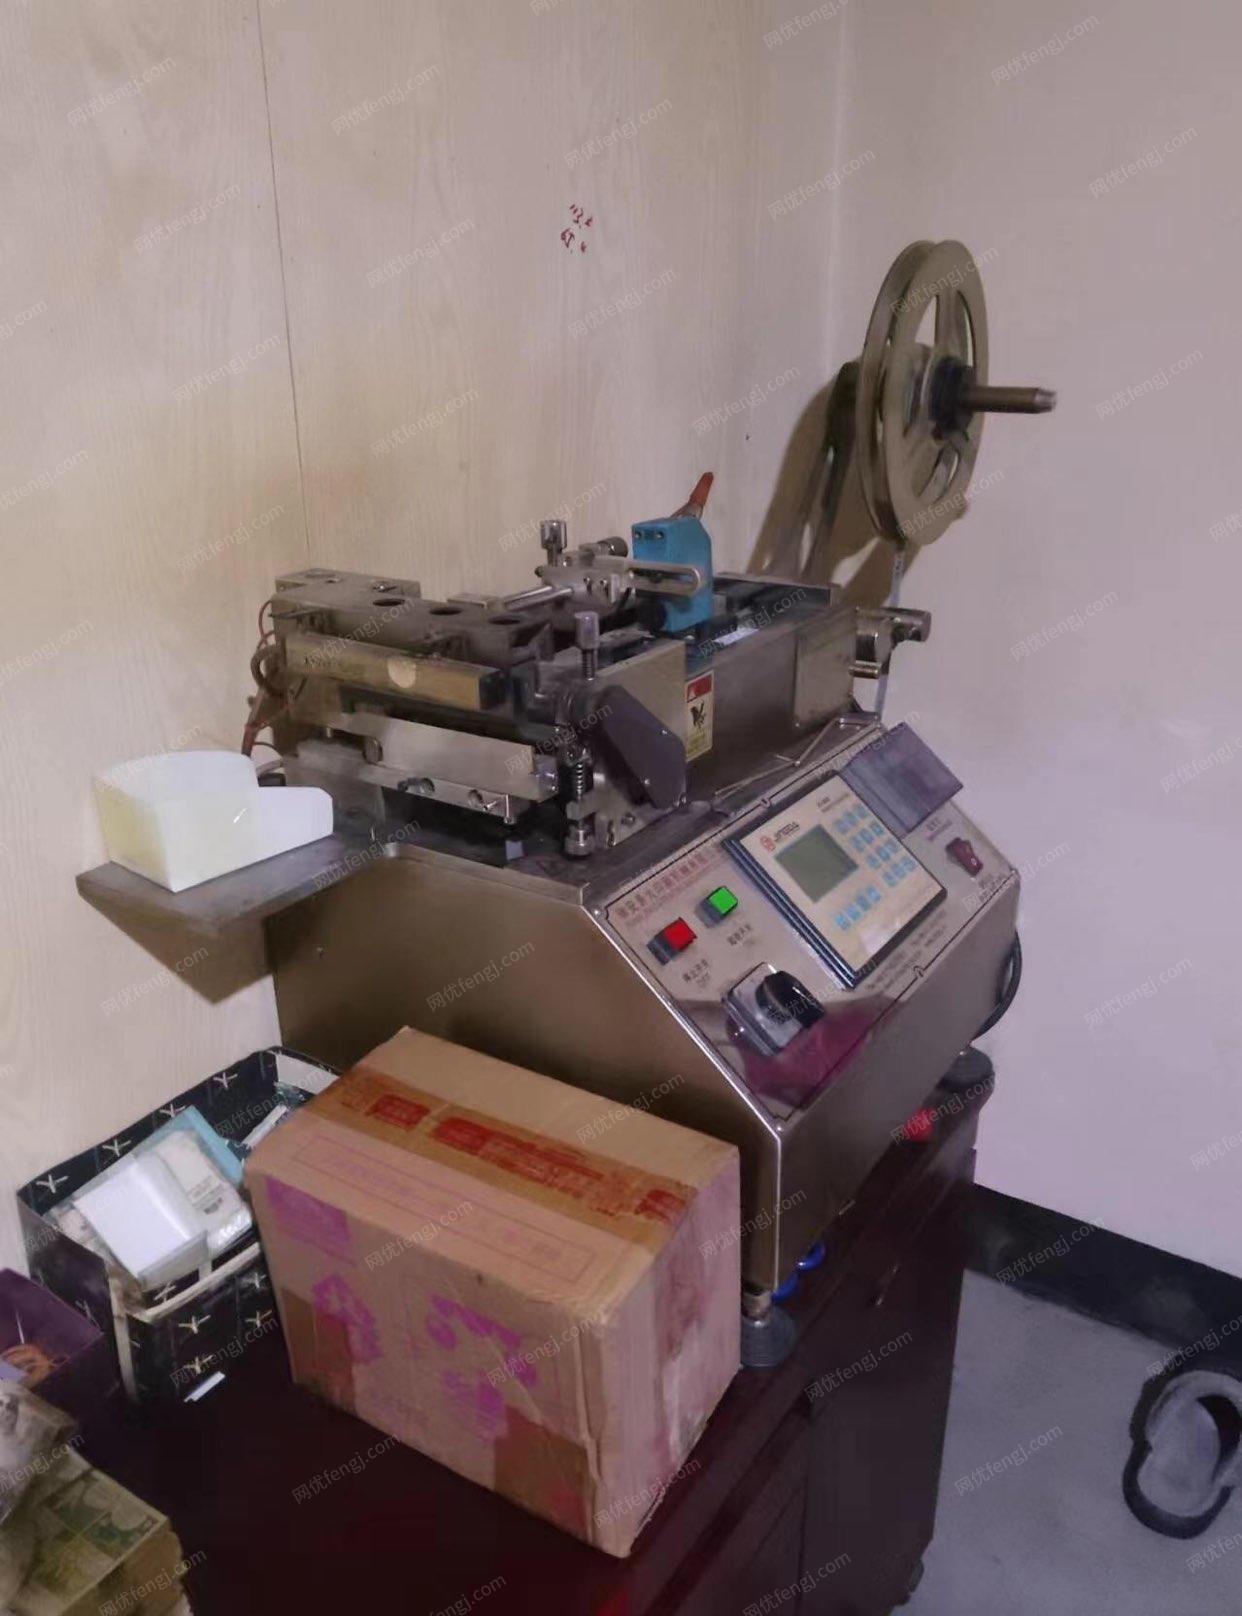 浙江杭州处理15年景大四色轮转商标印刷机机，晒版机